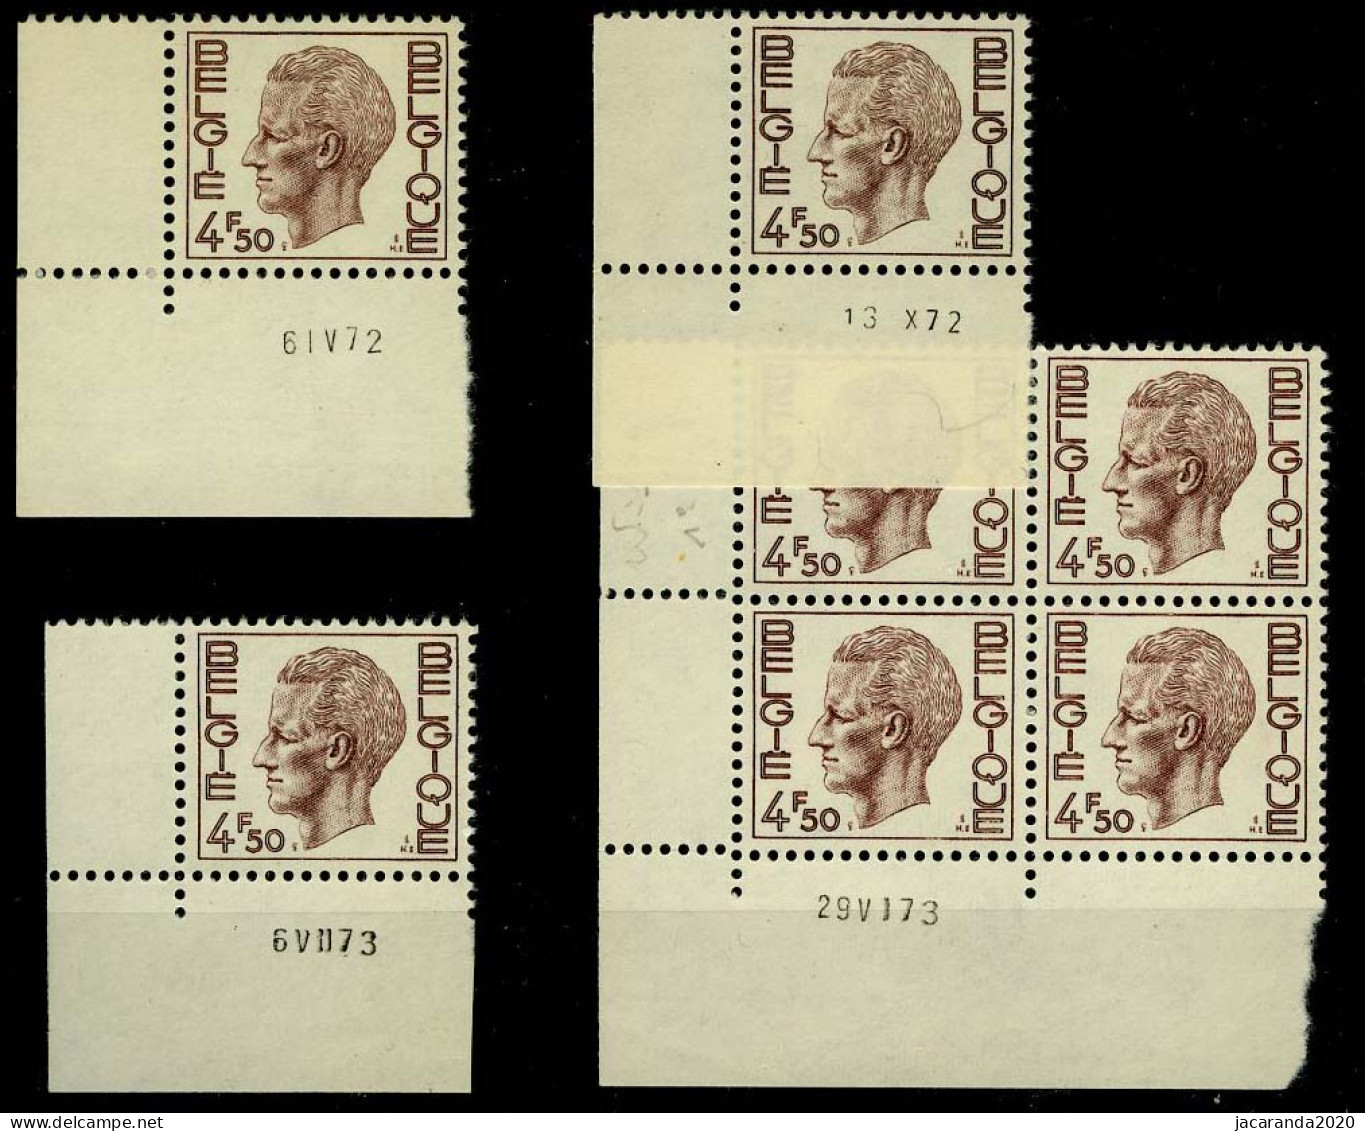 België 1644 - Koning Boudewijn - Type Elström - 4,50 - 4 Verschillende Datums 1972-1973 - Angoli Datati